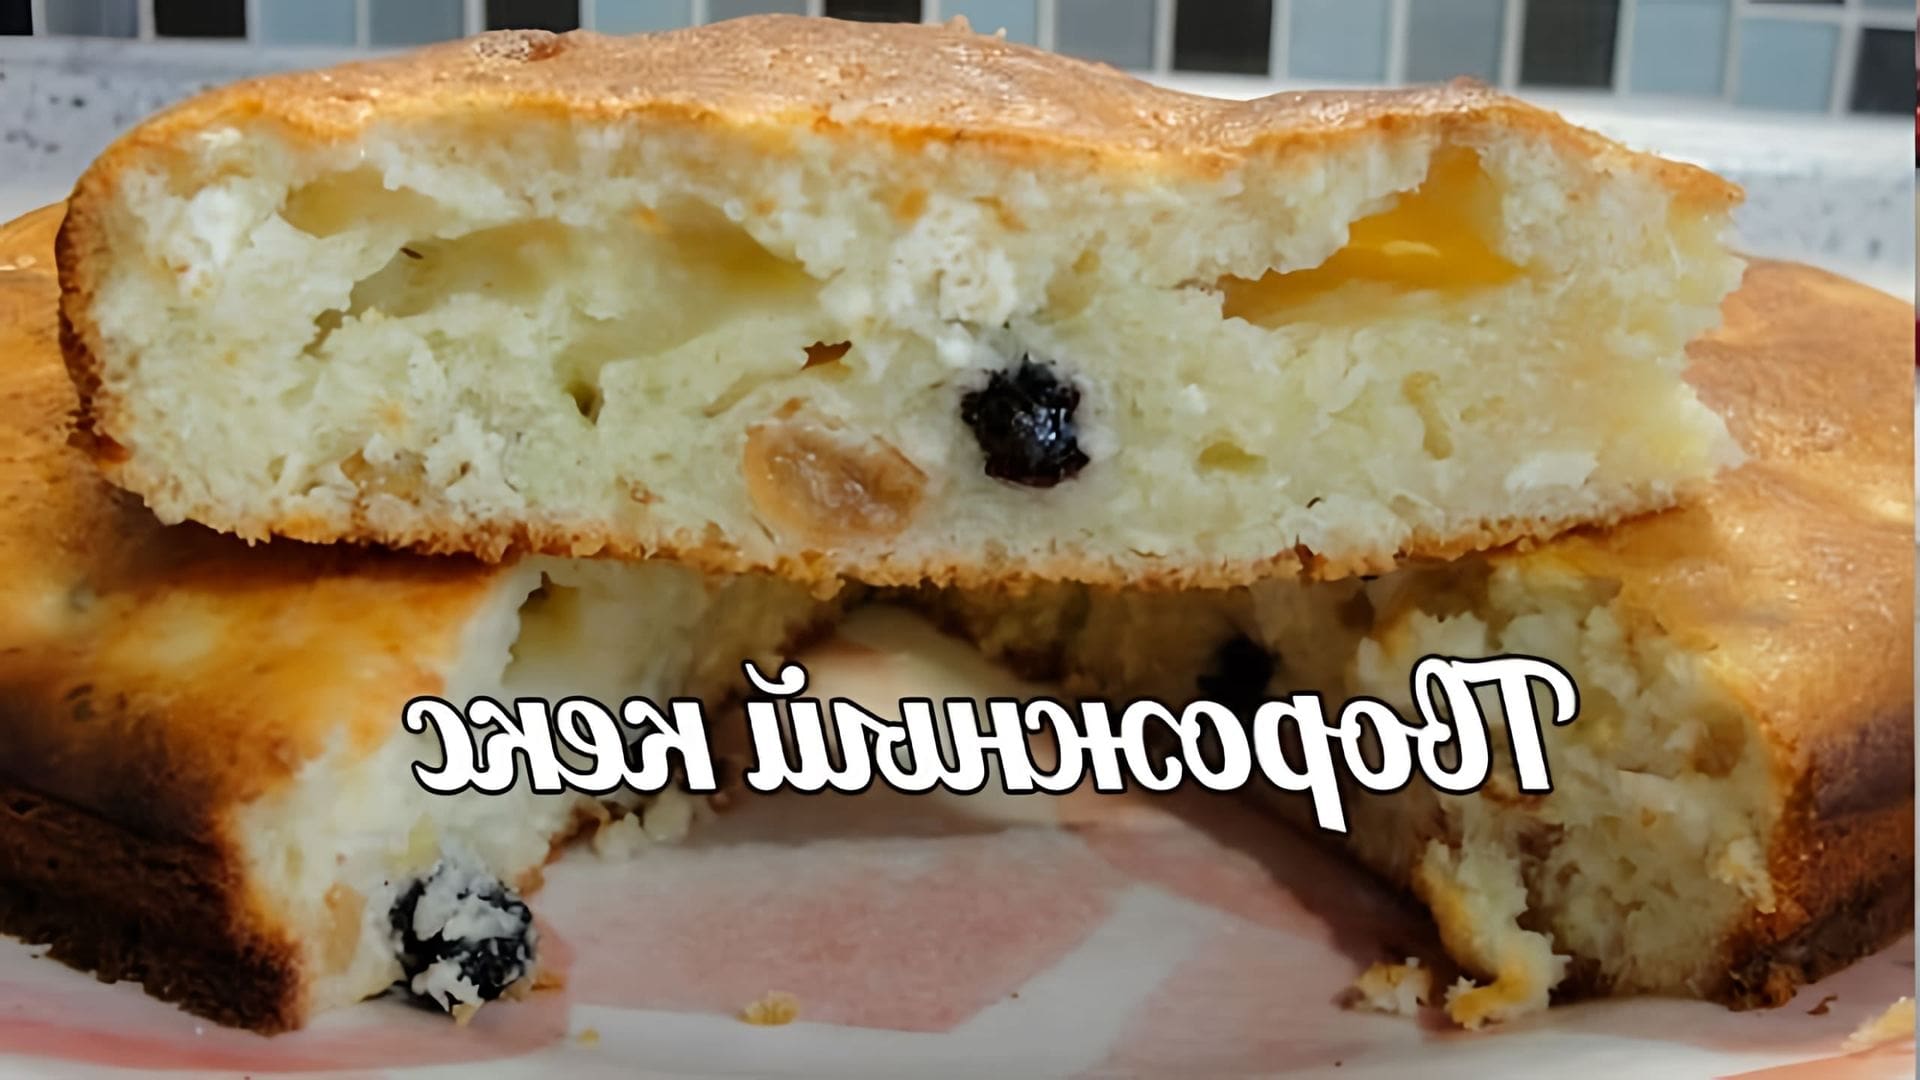 В этом видео демонстрируется рецепт приготовления творожного кекса